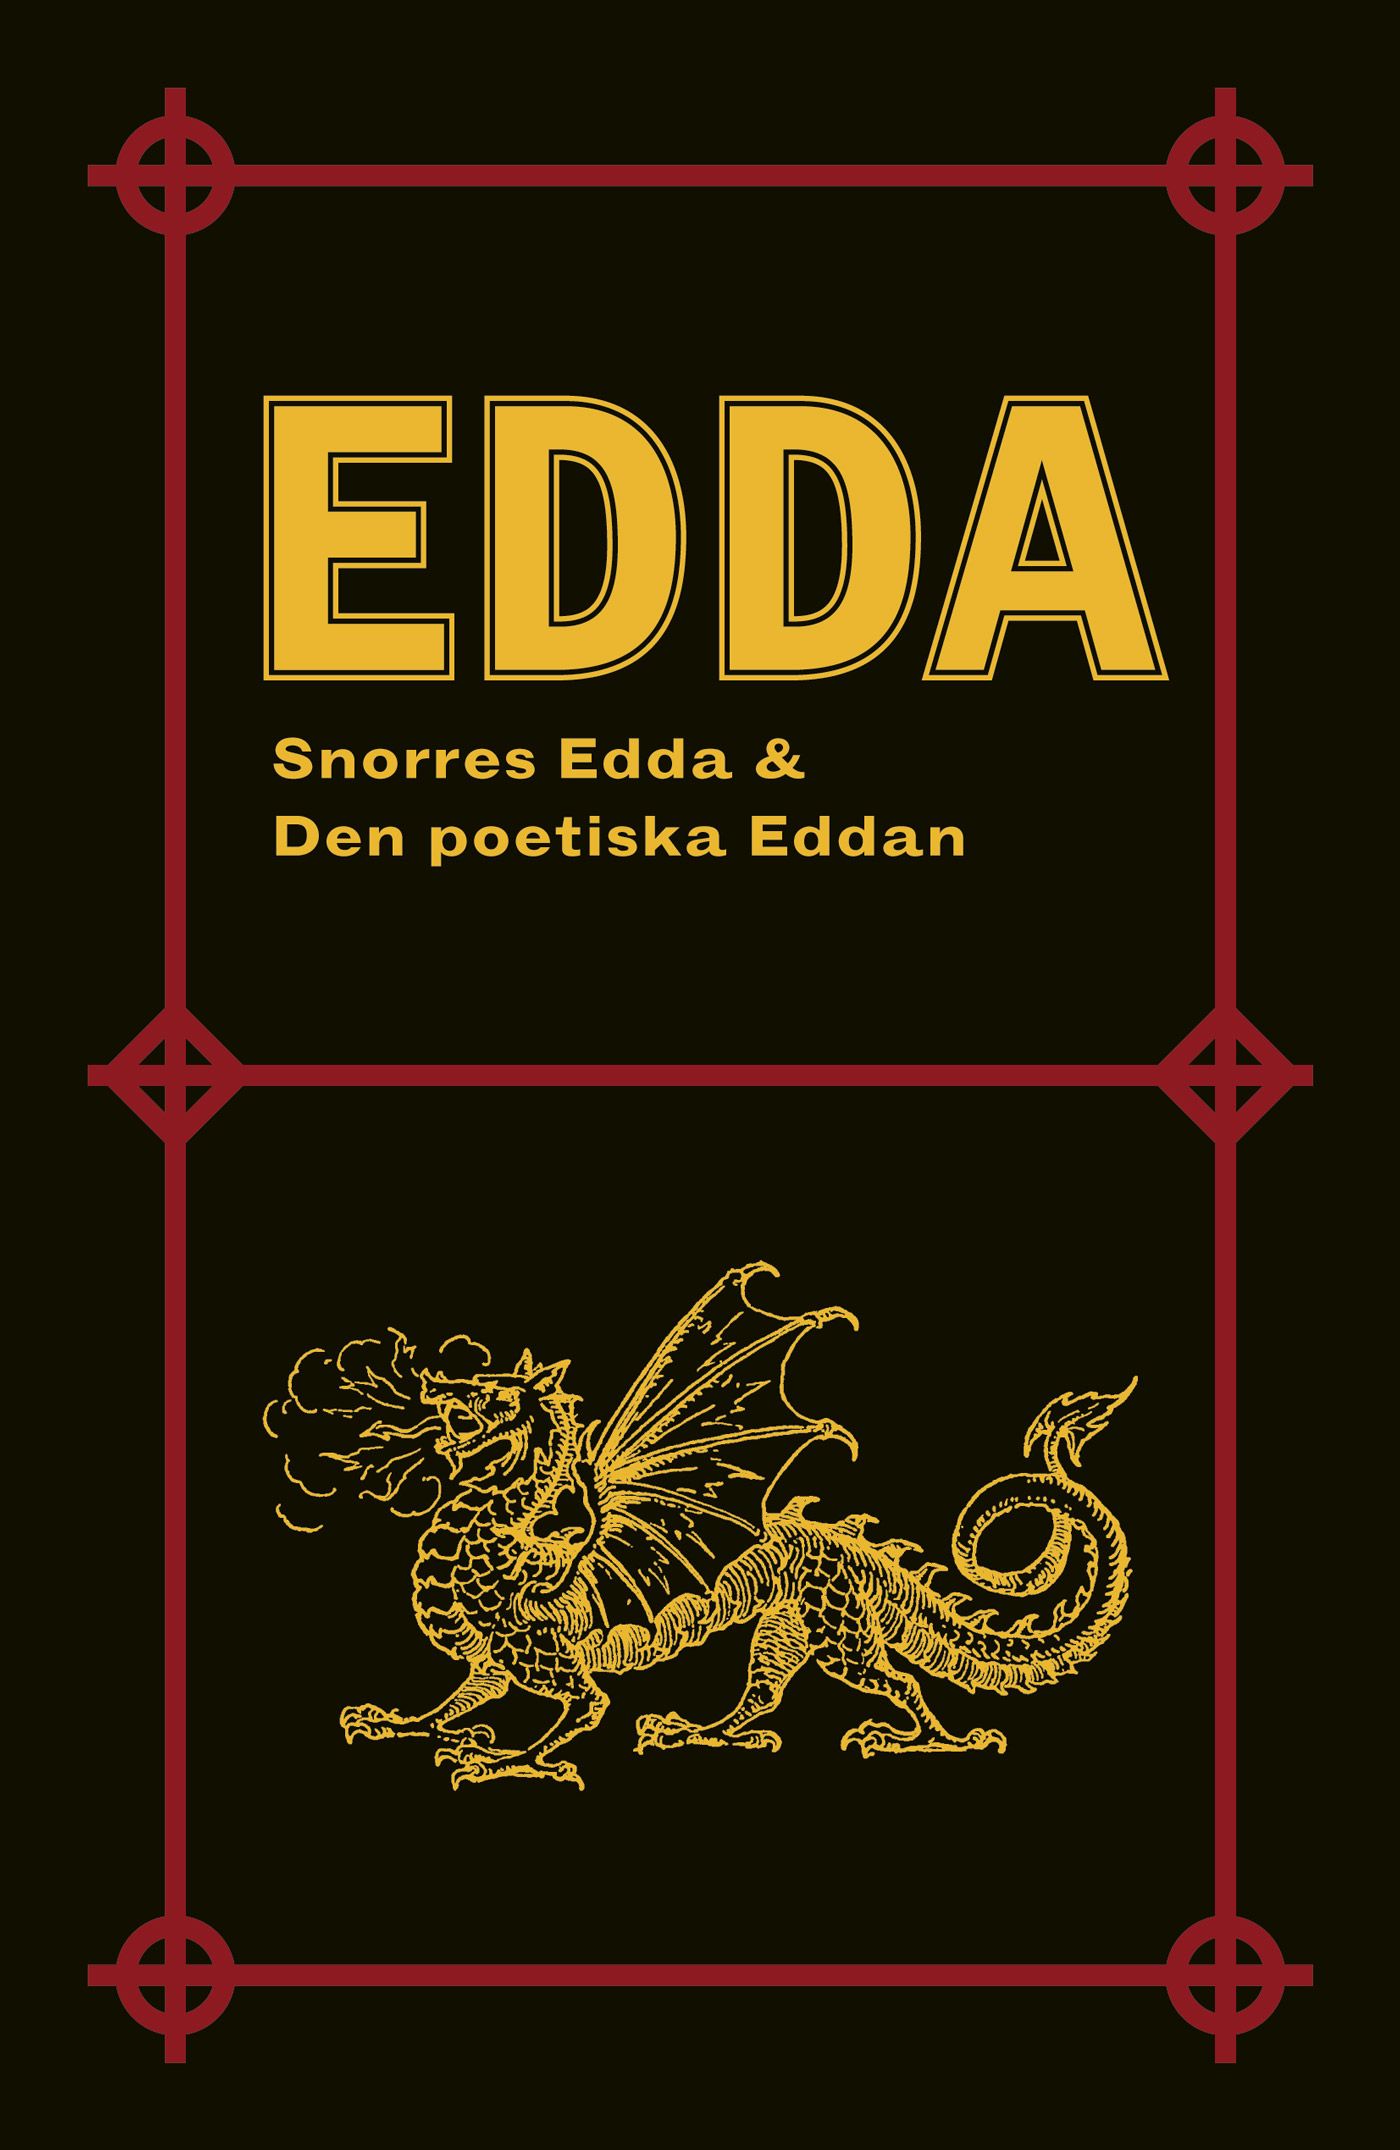 Edda: Snorres Edda & Den poetiska Eddan, e-bok av Peter August Gödecke, Snorre Sturlasson